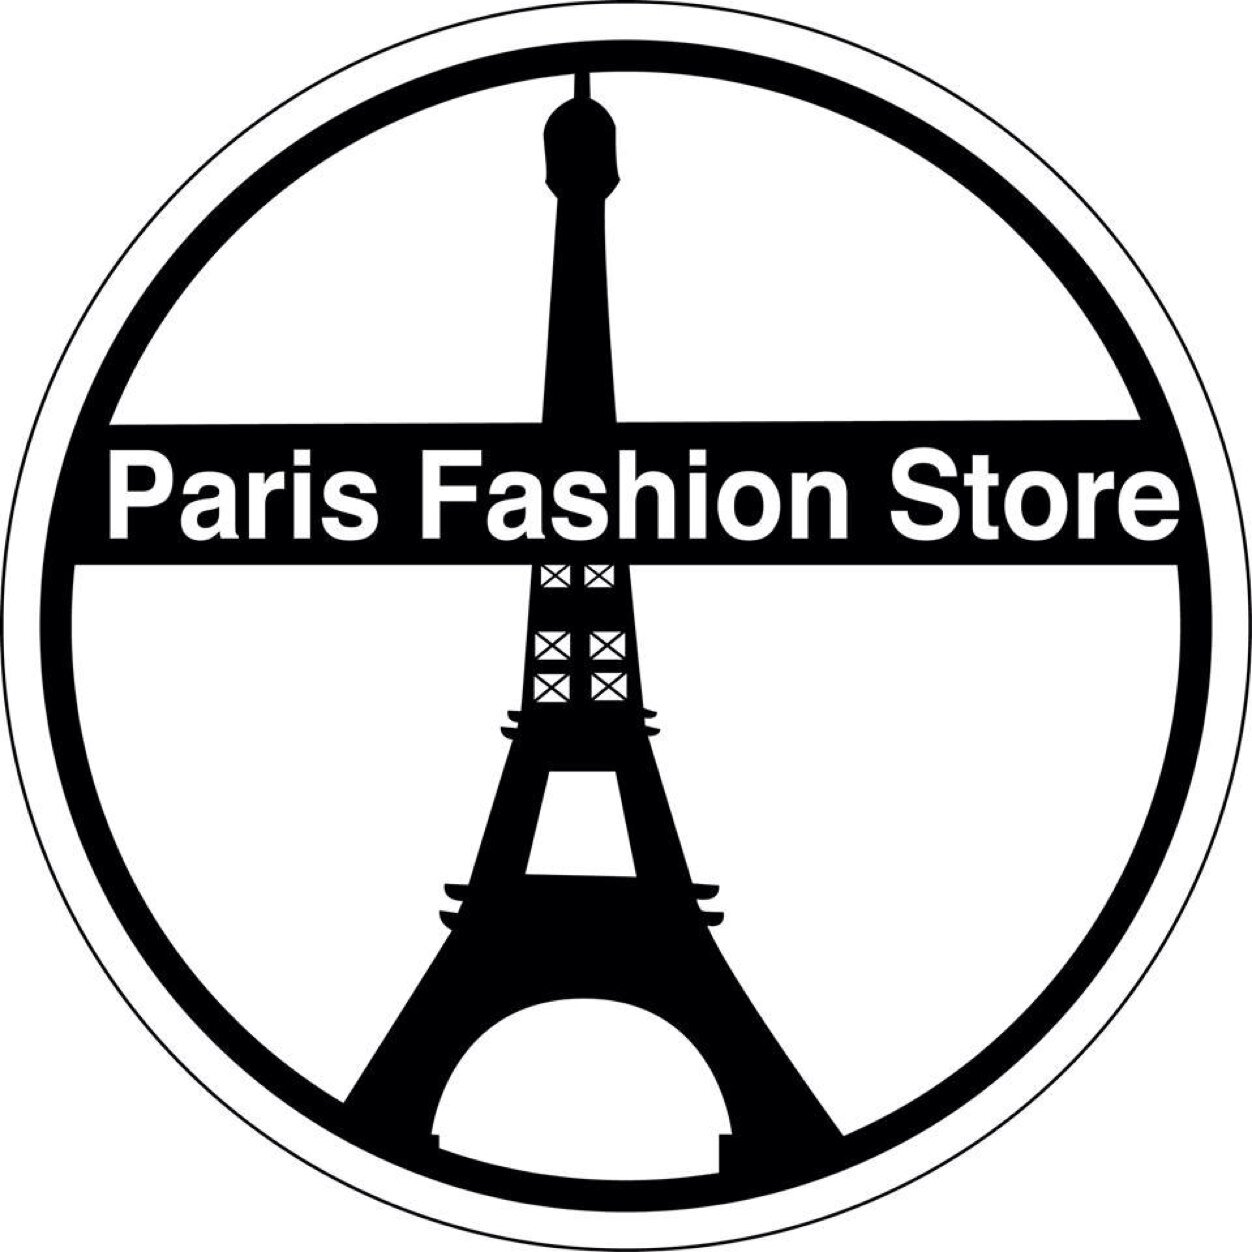 Wij verkopen de meest exclusieve merken tegen aantrekkelijke bedragen. heeft u vragen mail ons dan op fashionstoreinparis@gmail.com